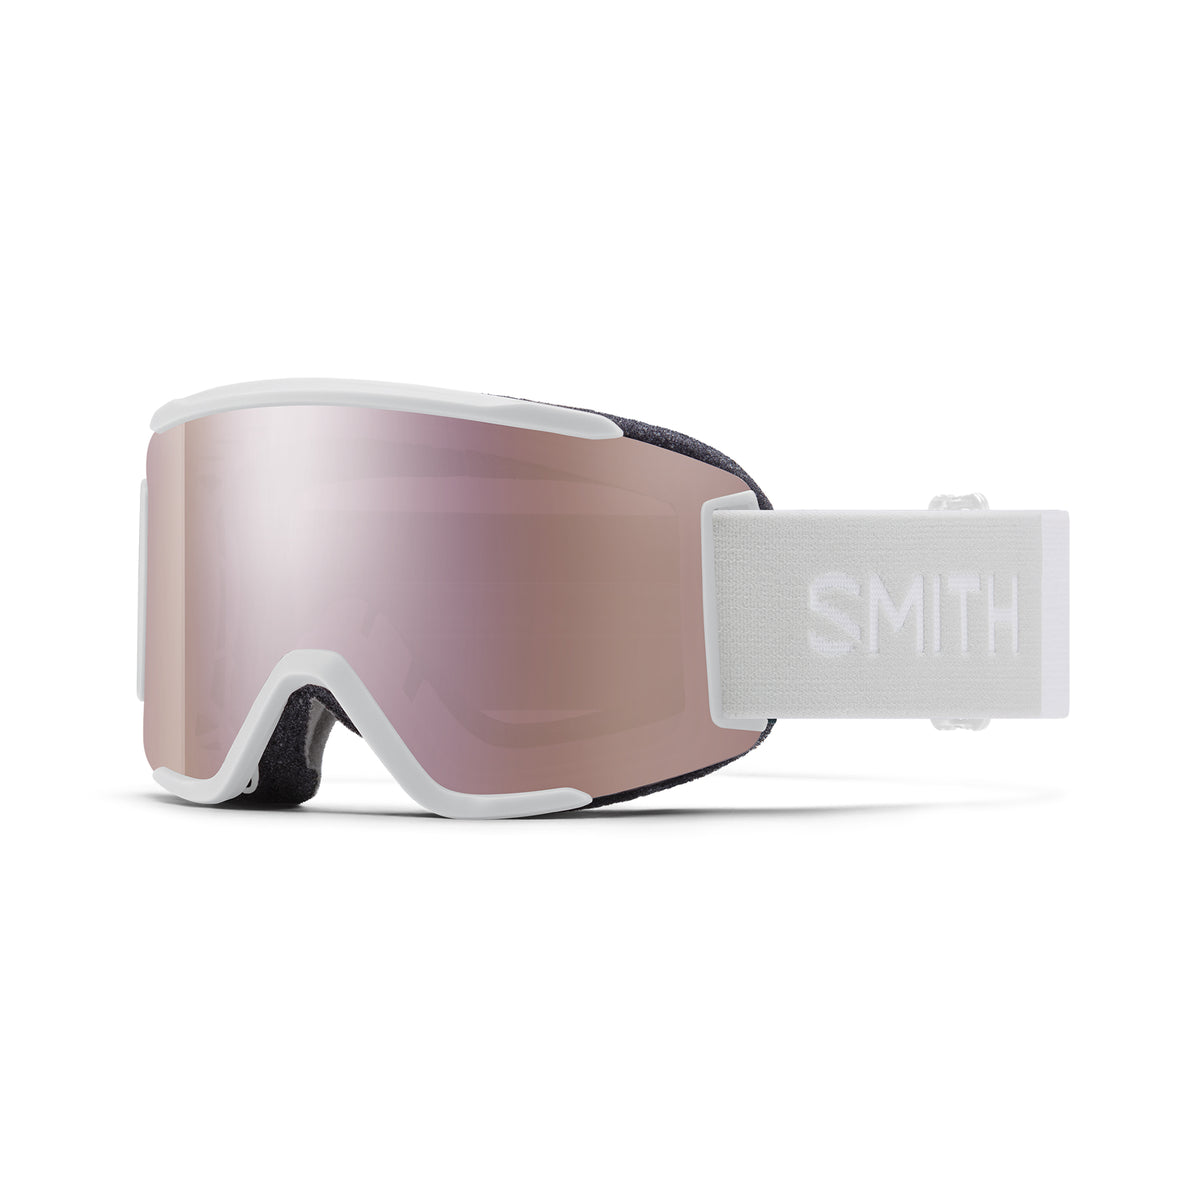 Smith SQUAD S Snow Goggles